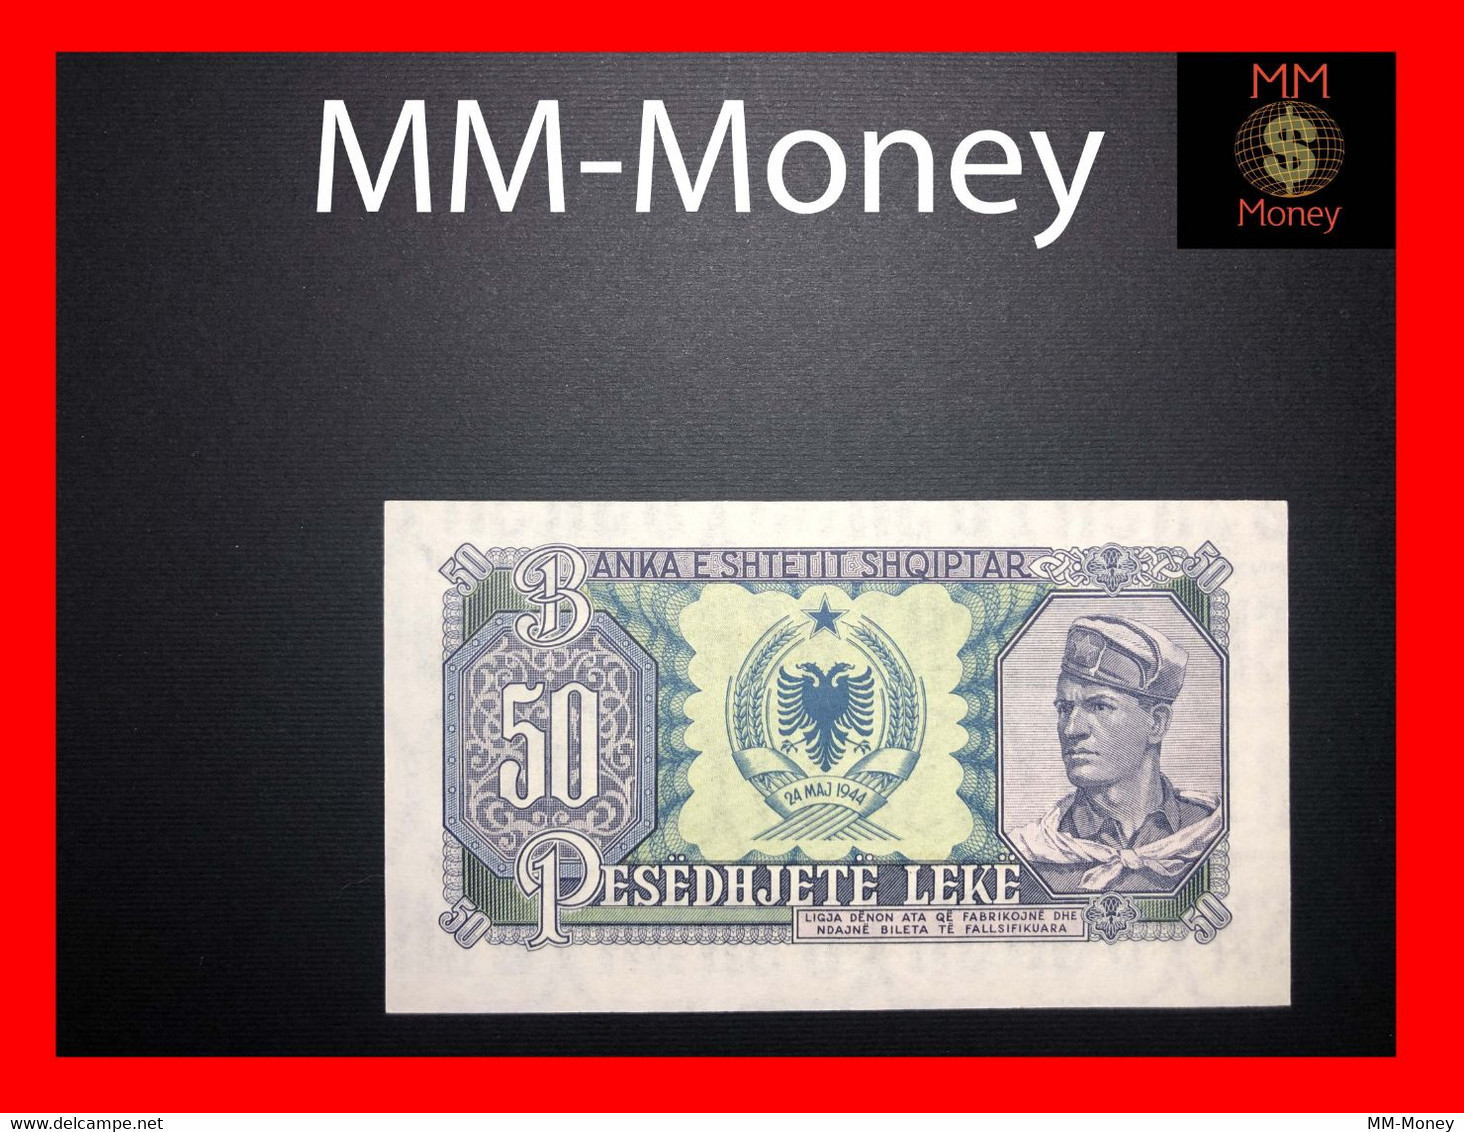 Albania 50 Leke 1957 P. 29 UNC   [MM-Money] - Albanie